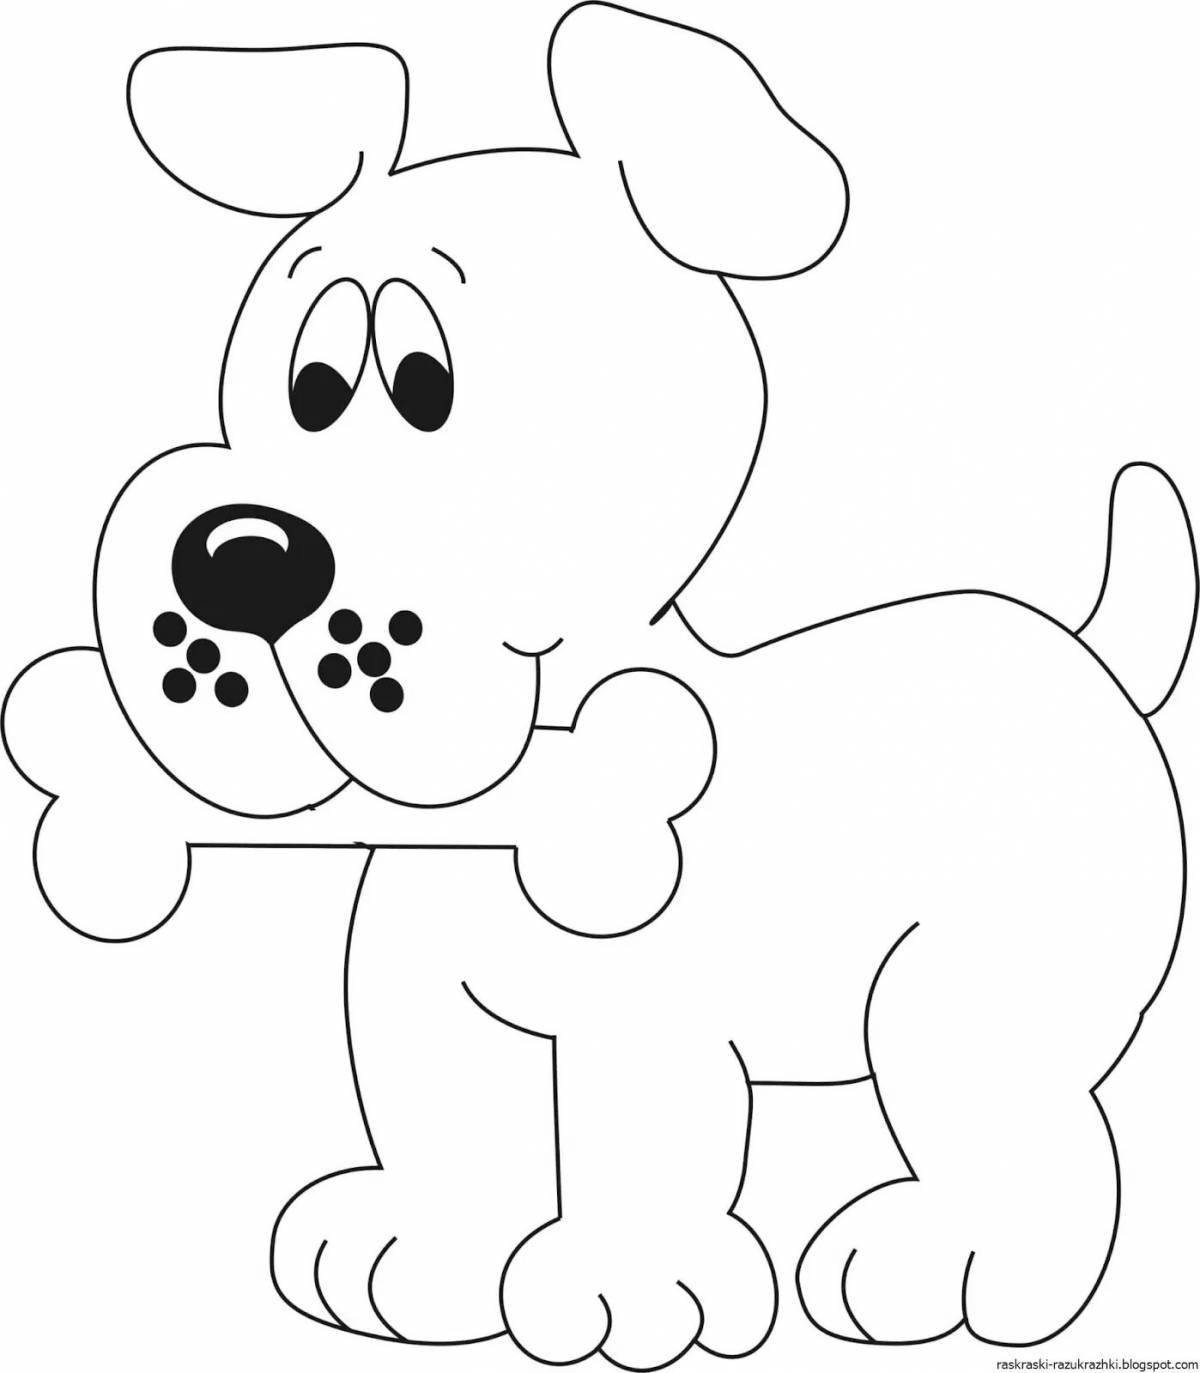 Раскраска веселая собачка для детей 2-3 лет